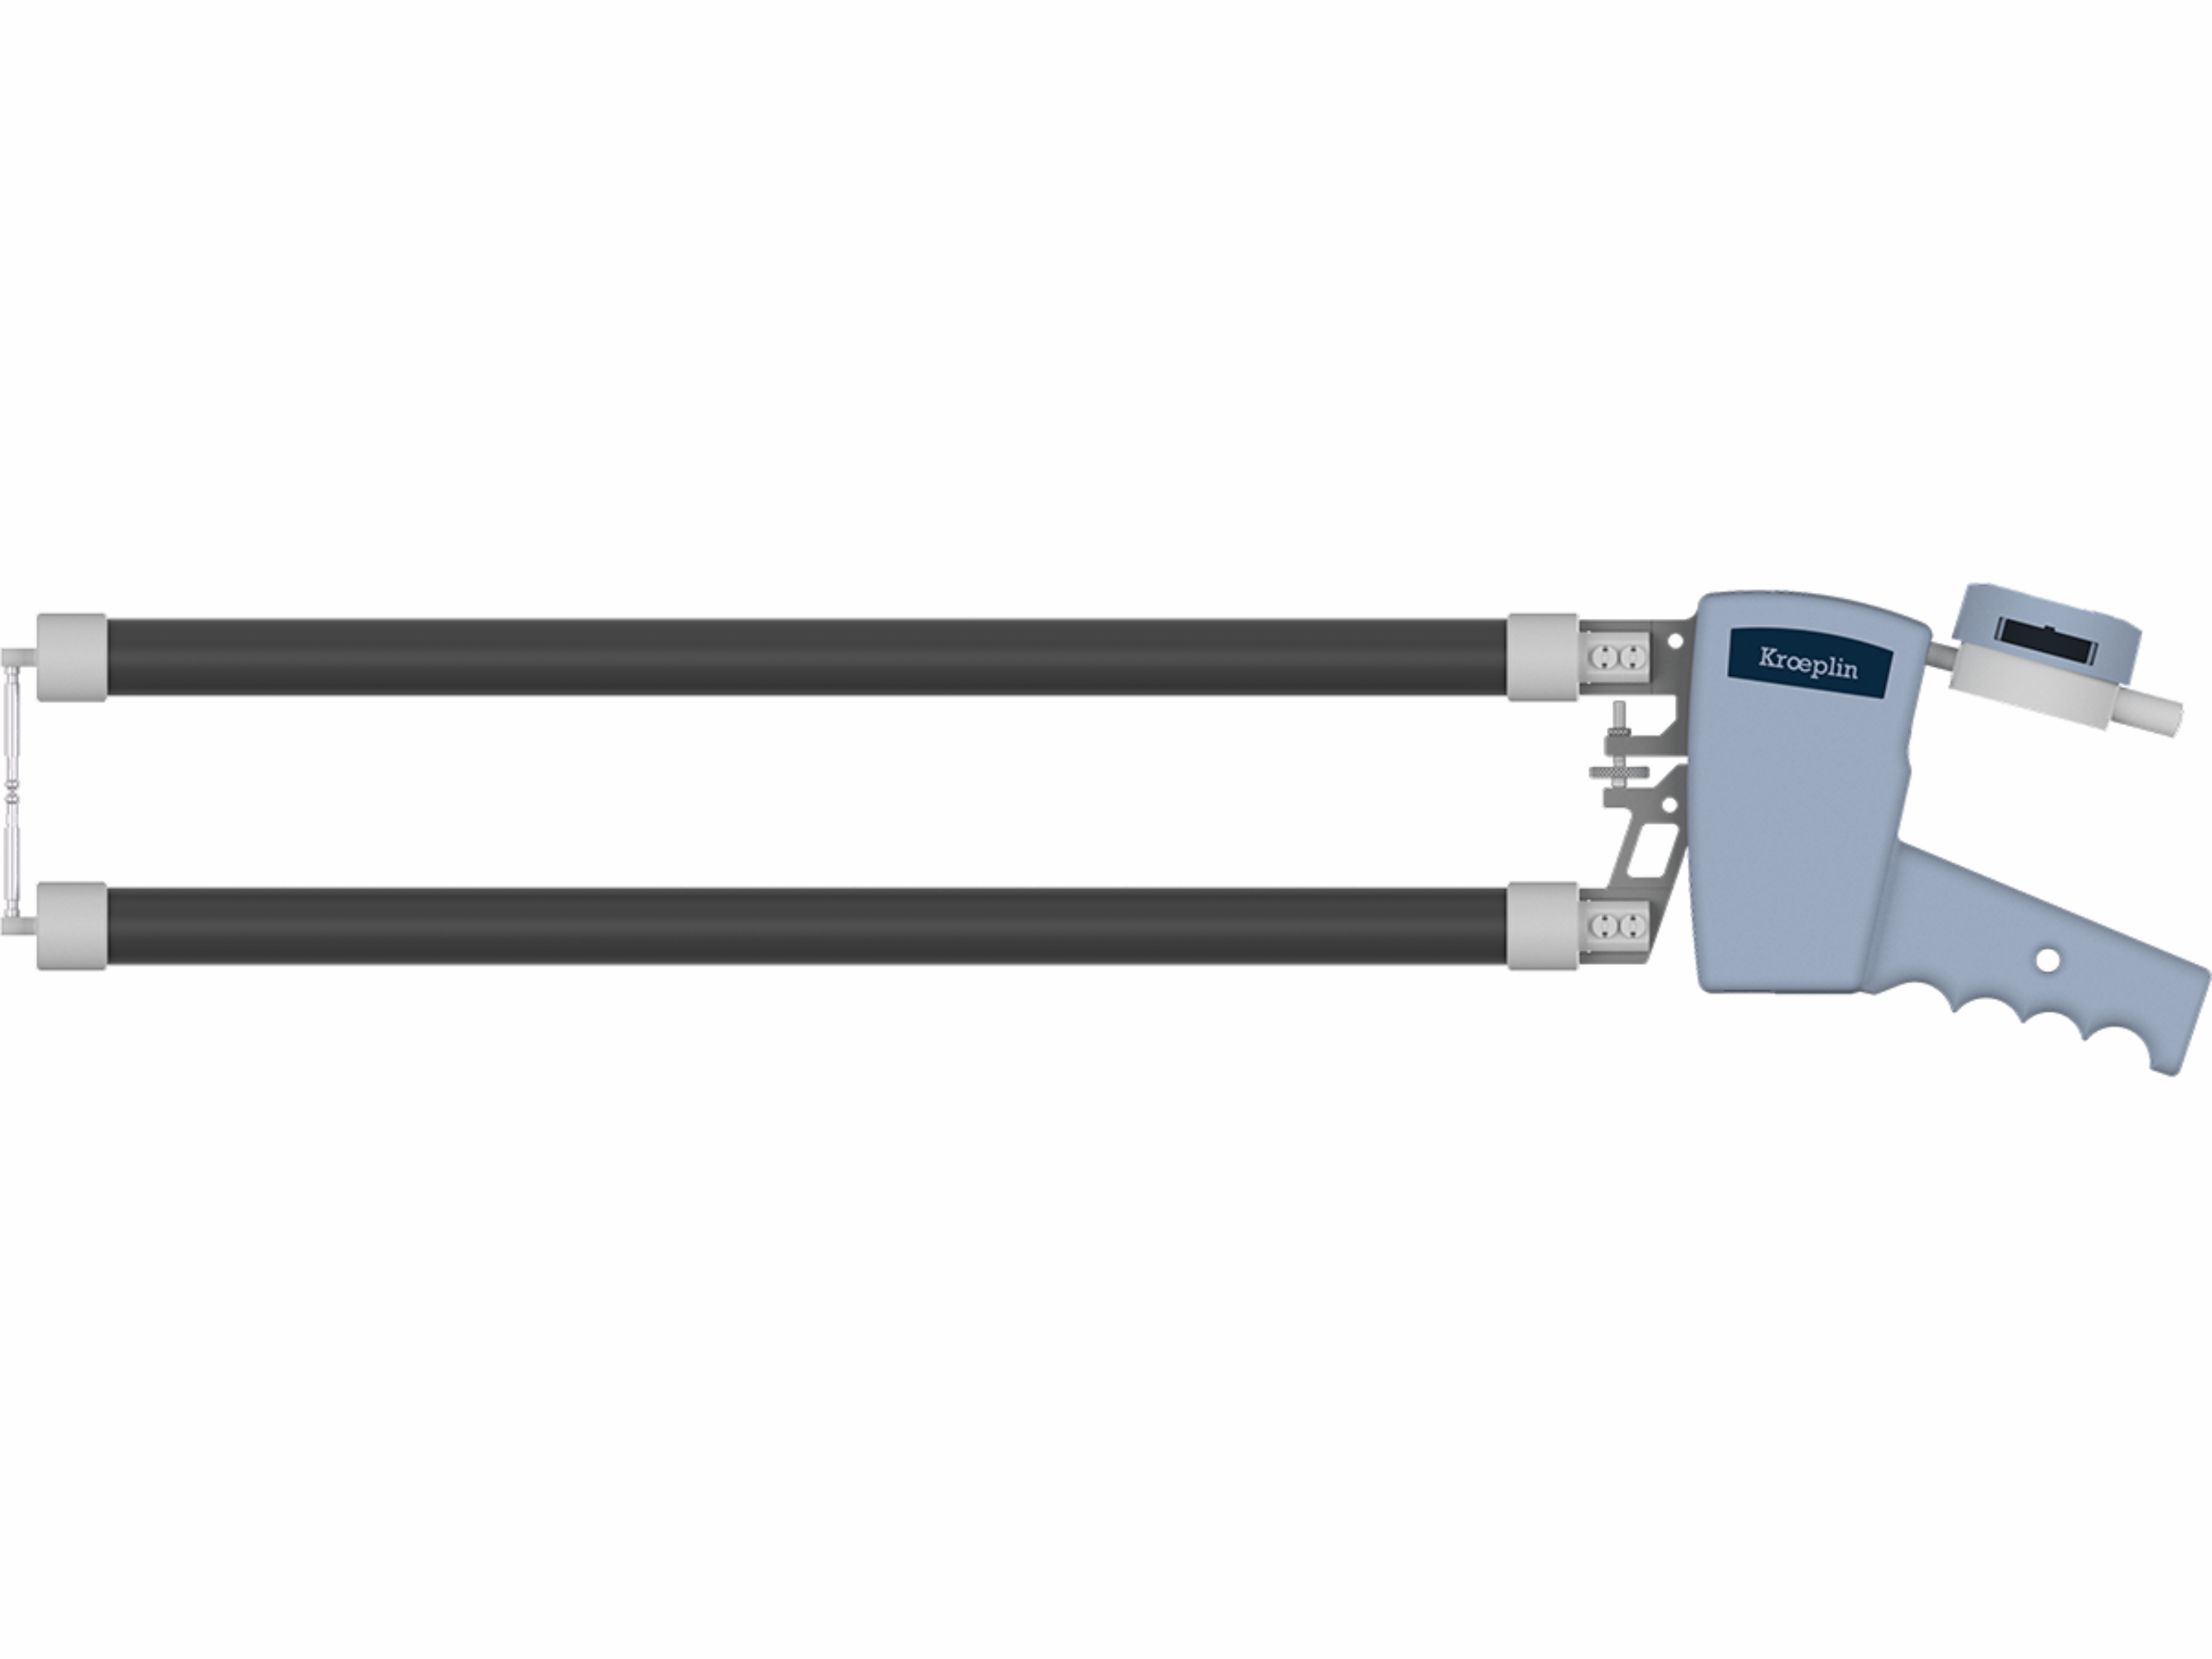 Digital External Caliper Gauge 0-100mm, 0.1mm C12100